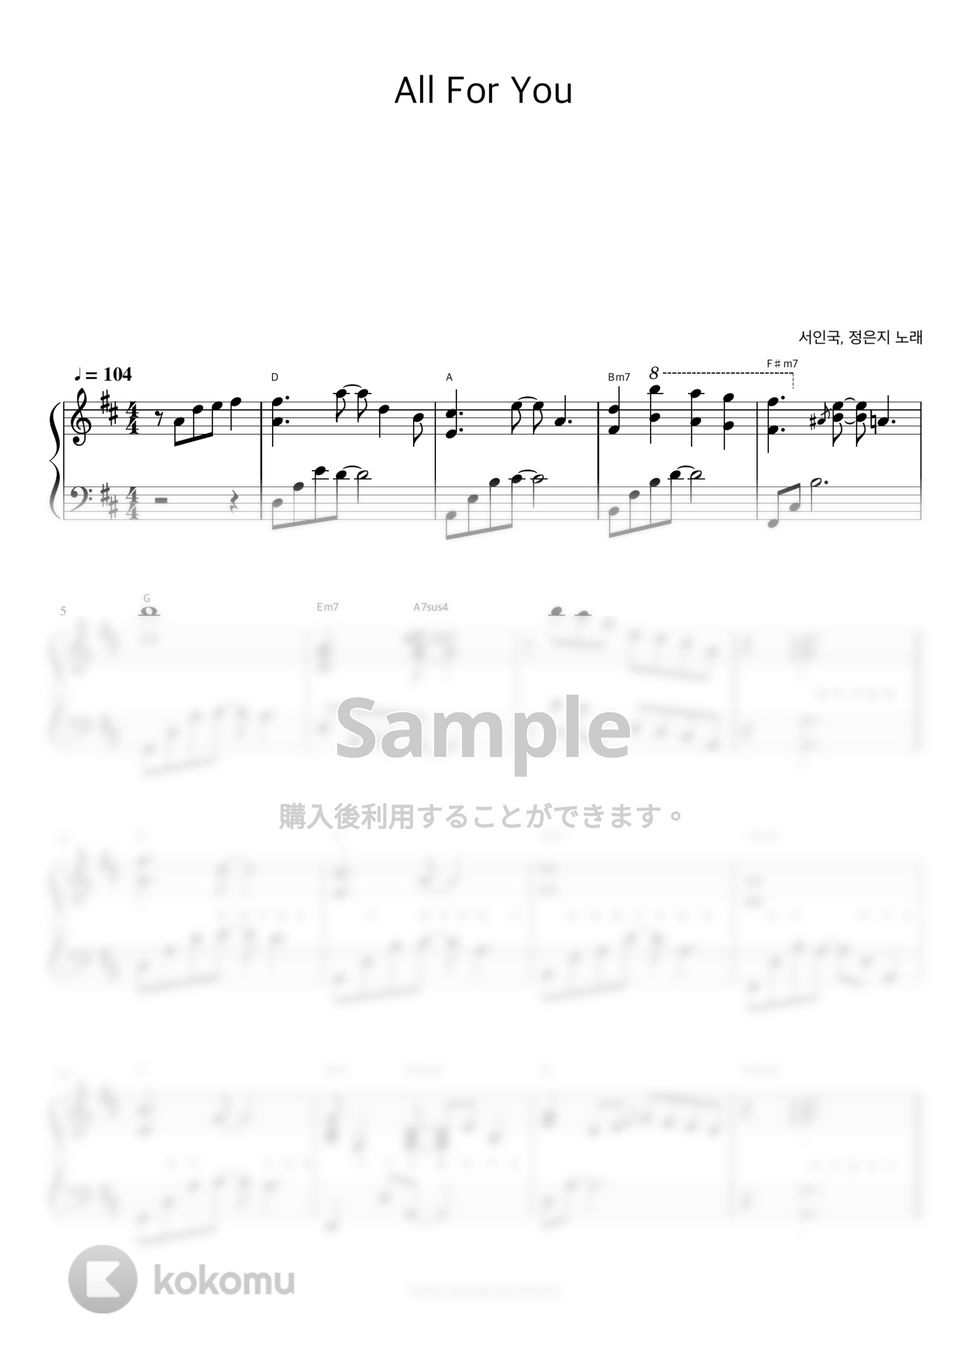 ソ・イングク、チョン・ウンジ - All For You (『応答せよ1997』OST / 伴奏楽譜) by 피아노정류장